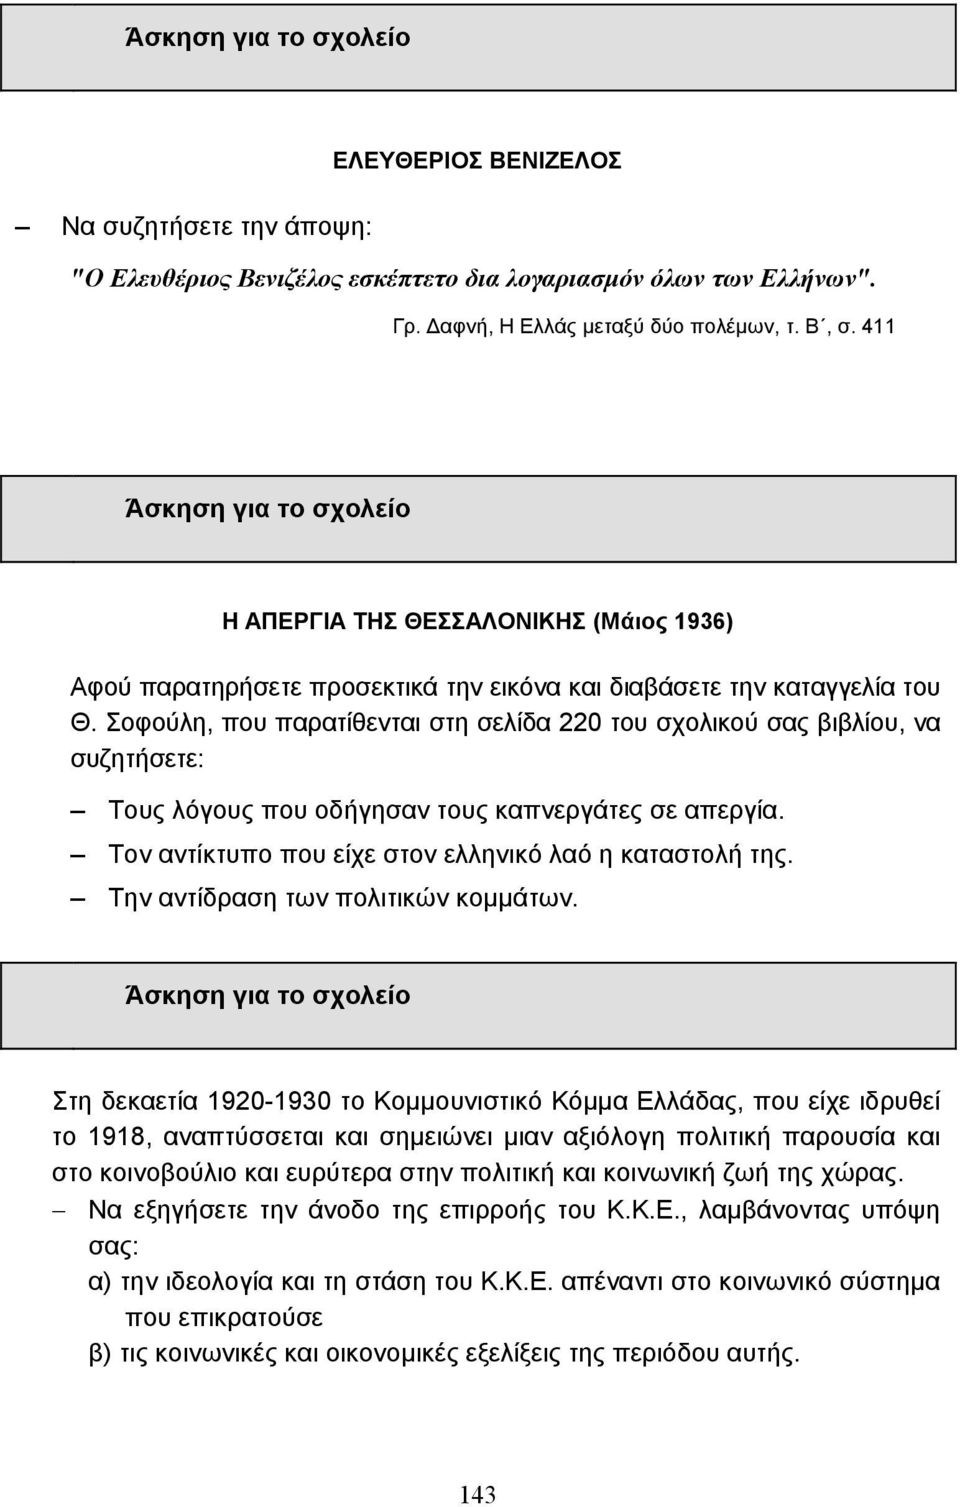 Σοφούλη, που παρατίθενται στη σελίδα 220 του σχολικού σας βιβλίου, να συζητήσετε: Τους λόγους που οδήγησαν τους καπνεργάτες σε απεργία. Τον αντίκτυπο που είχε στον ελληνικό λαό η καταστολή της.